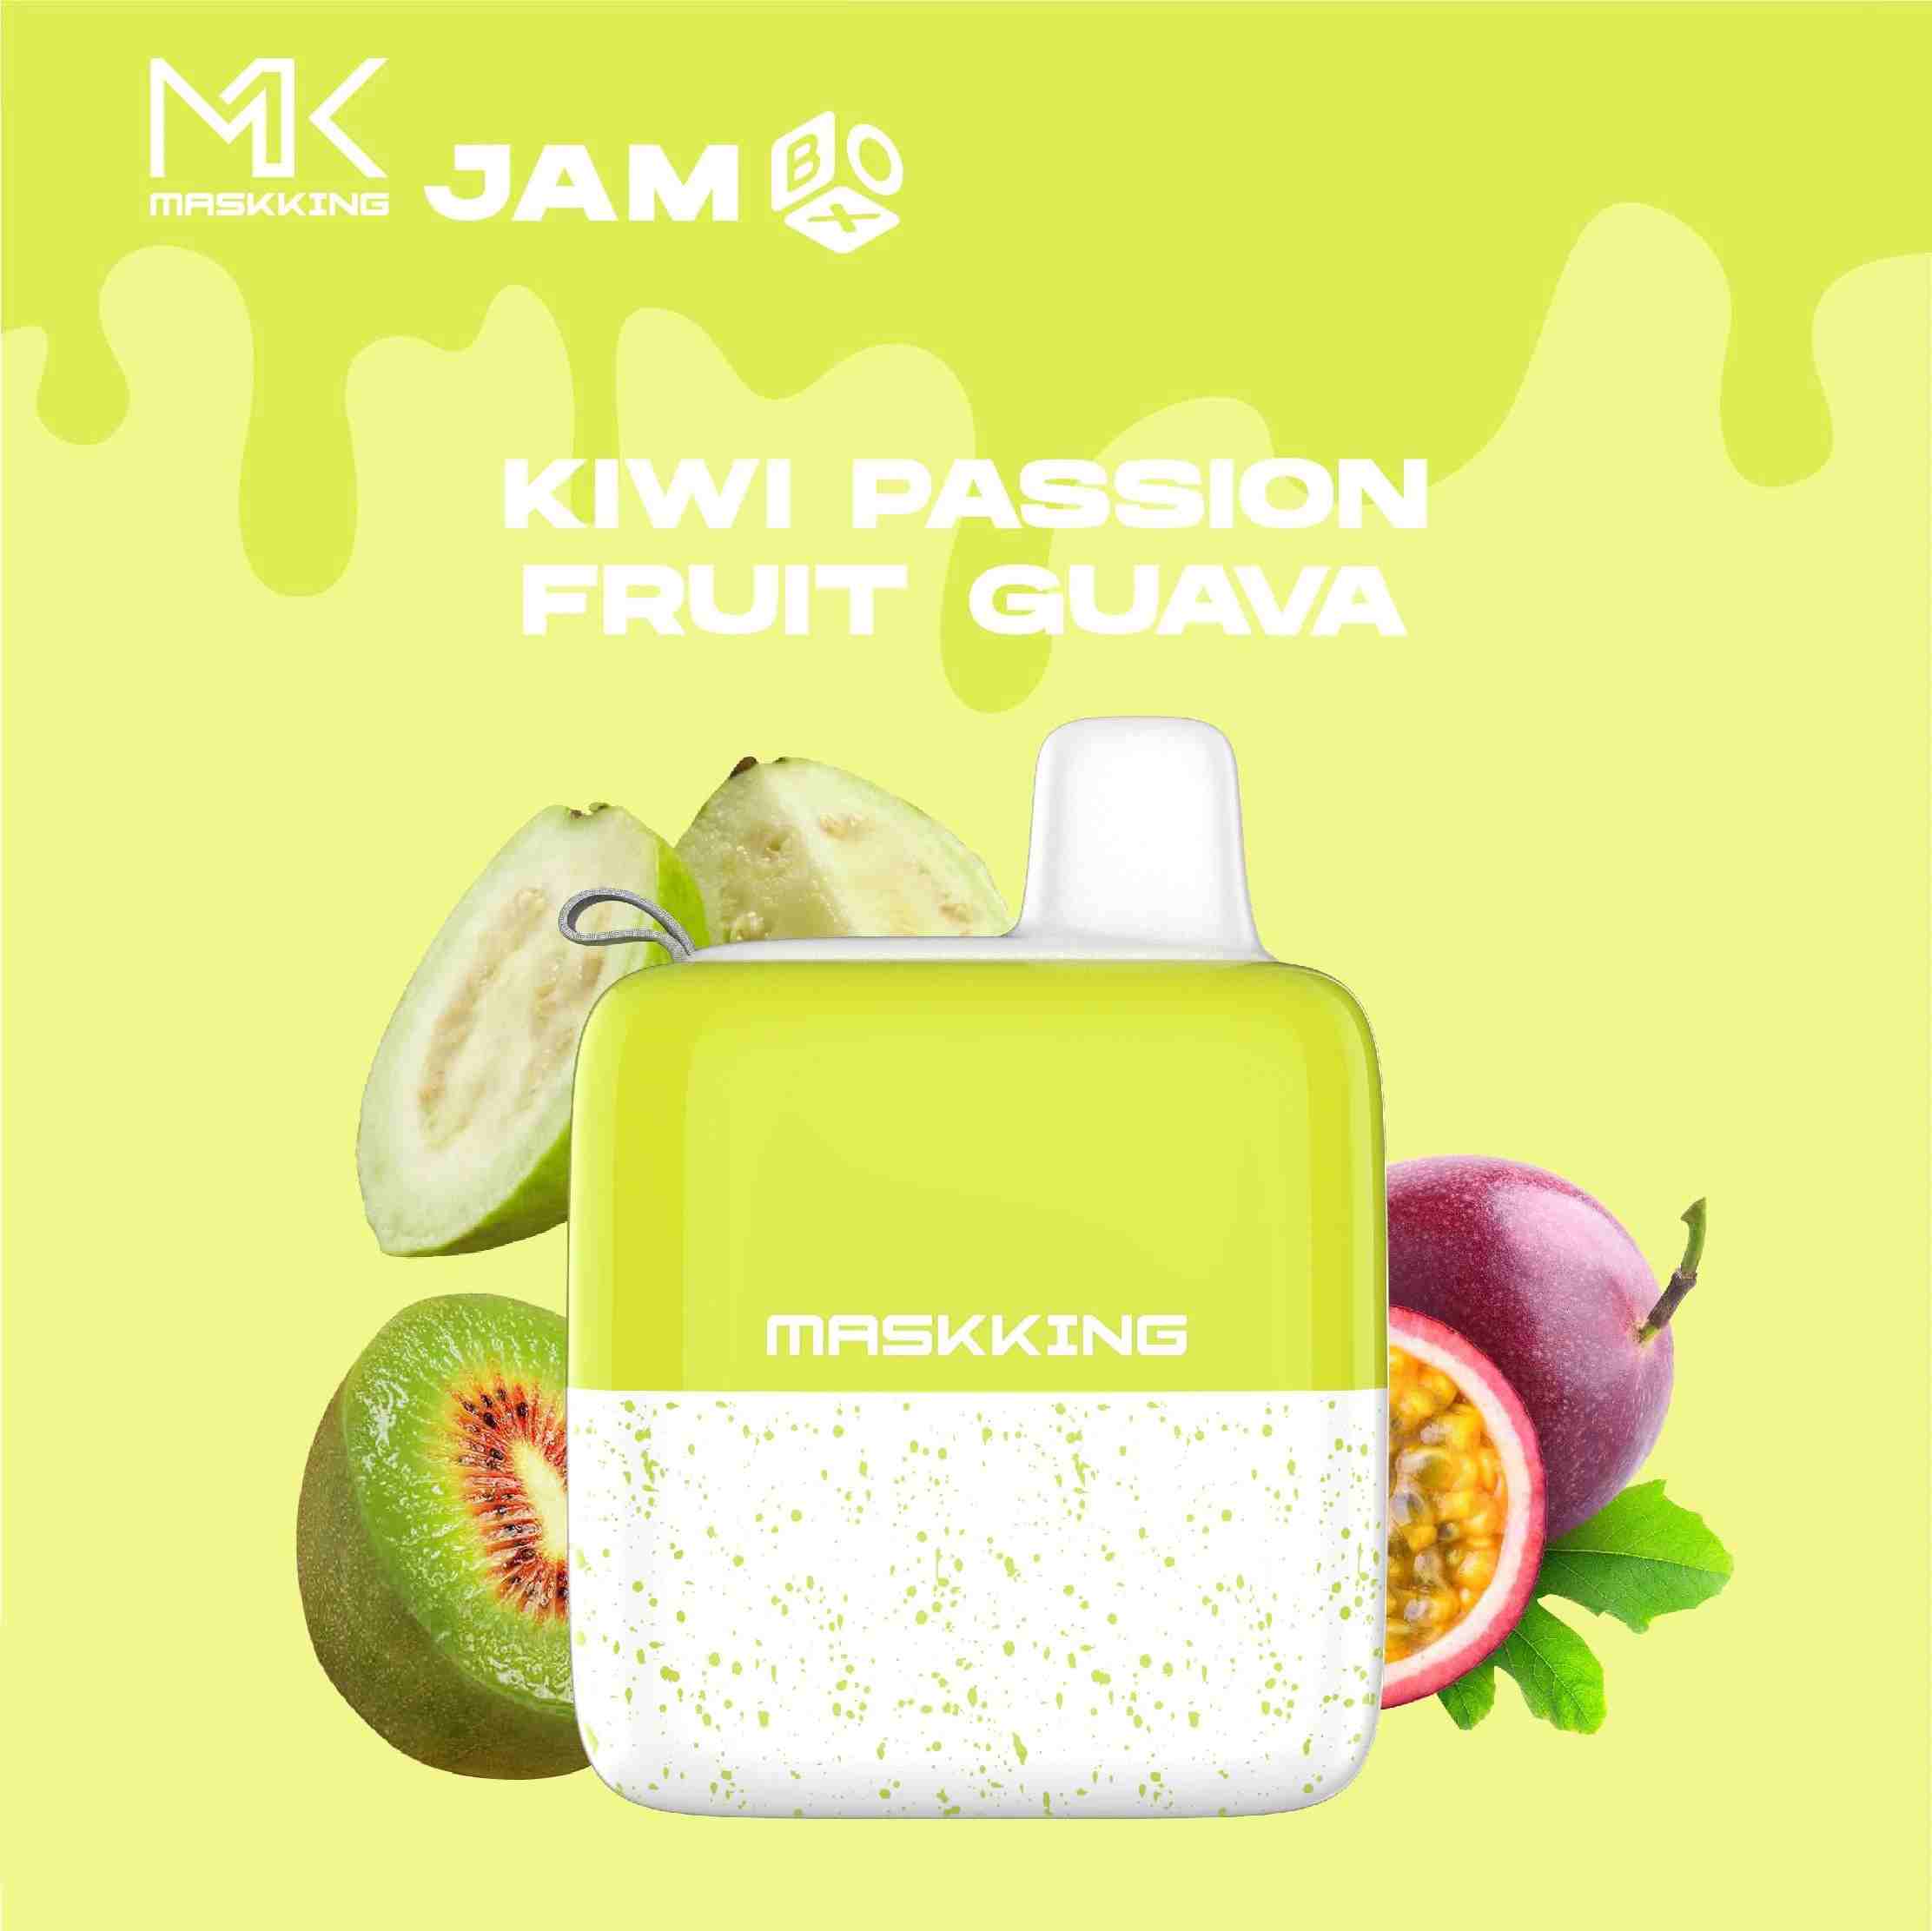 Maskking Jam Box - Kiwi Passion Fruit Guava